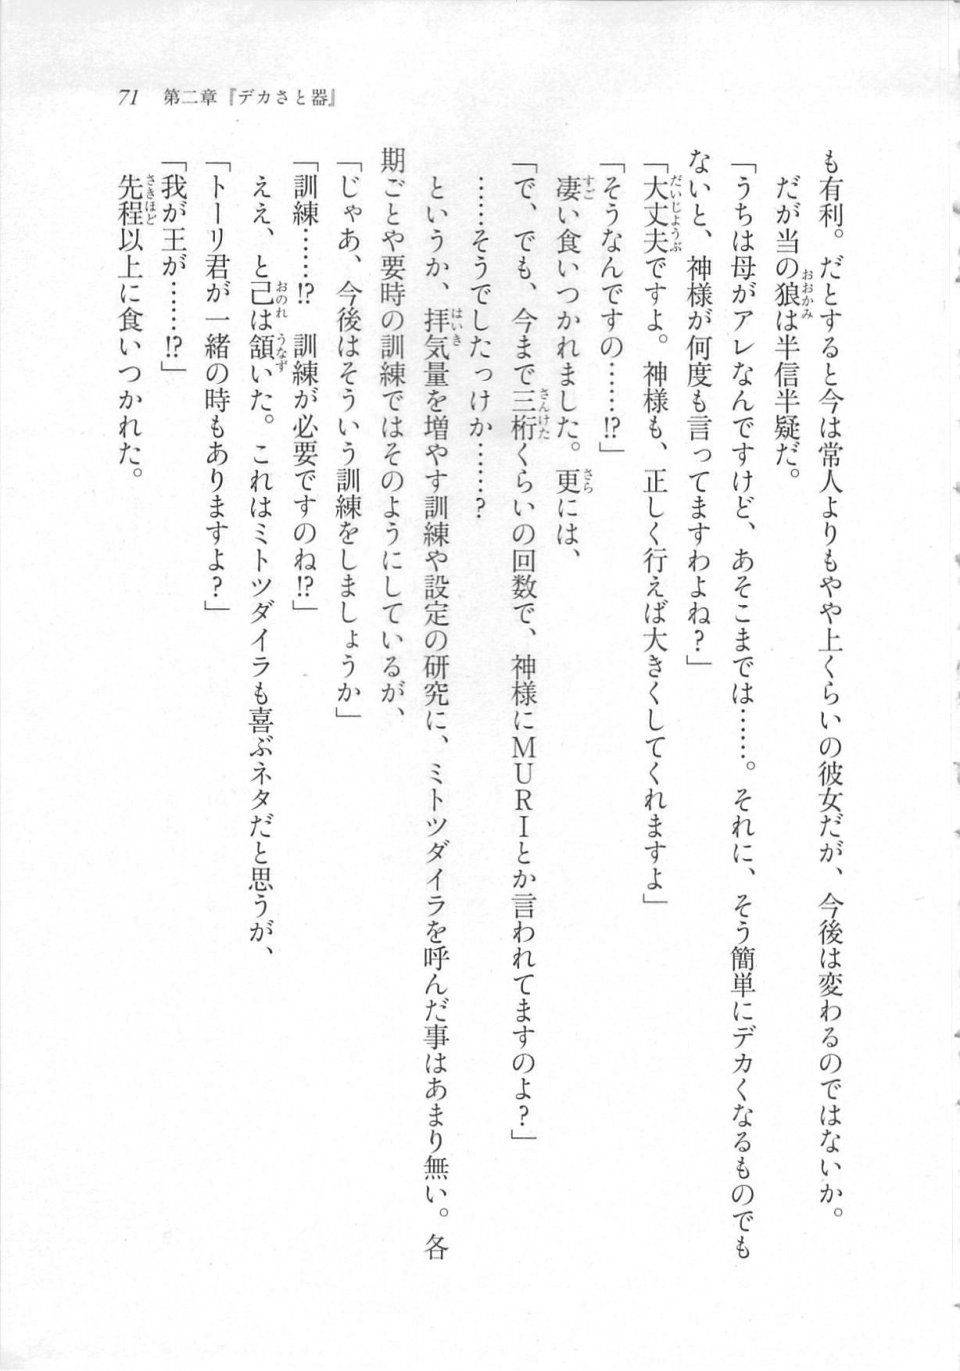 Kyoukai Senjou no Horizon LN Sidestory Vol 3 - Photo #75